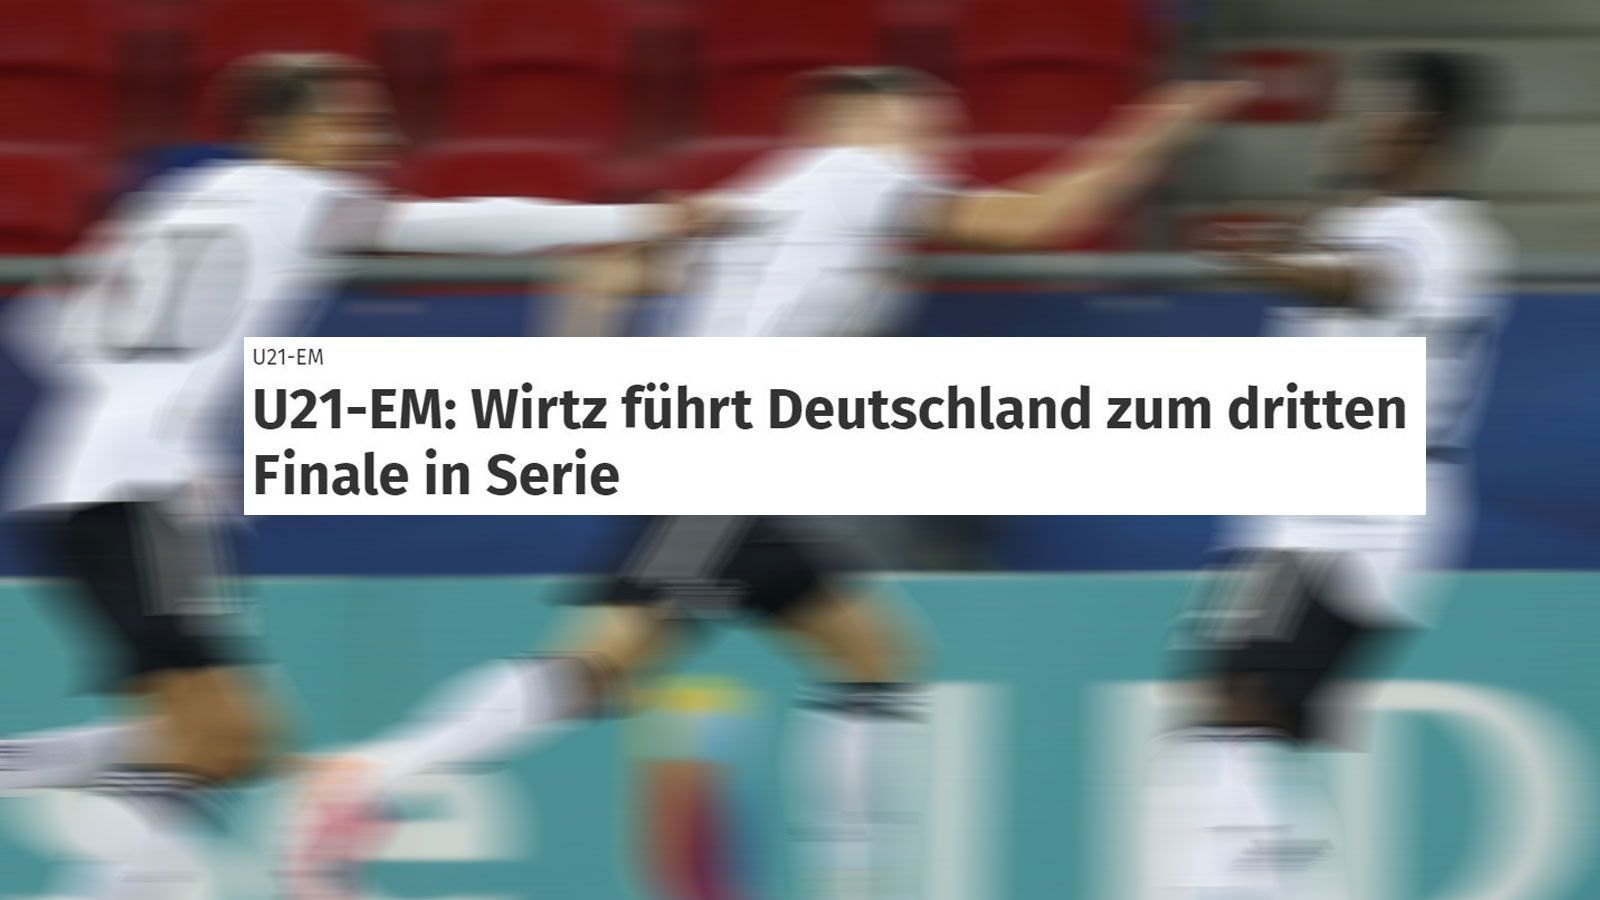 
                <strong>"WAZ"</strong><br>
                Auch für die "Westdeutsche Allgemeine Zeitung" kann nur einer der "Matchwinner" sein - natürlich Florian Wirtz, der aus dem "entfesselt aufspielenden Team" hervorgestochen sei.
              